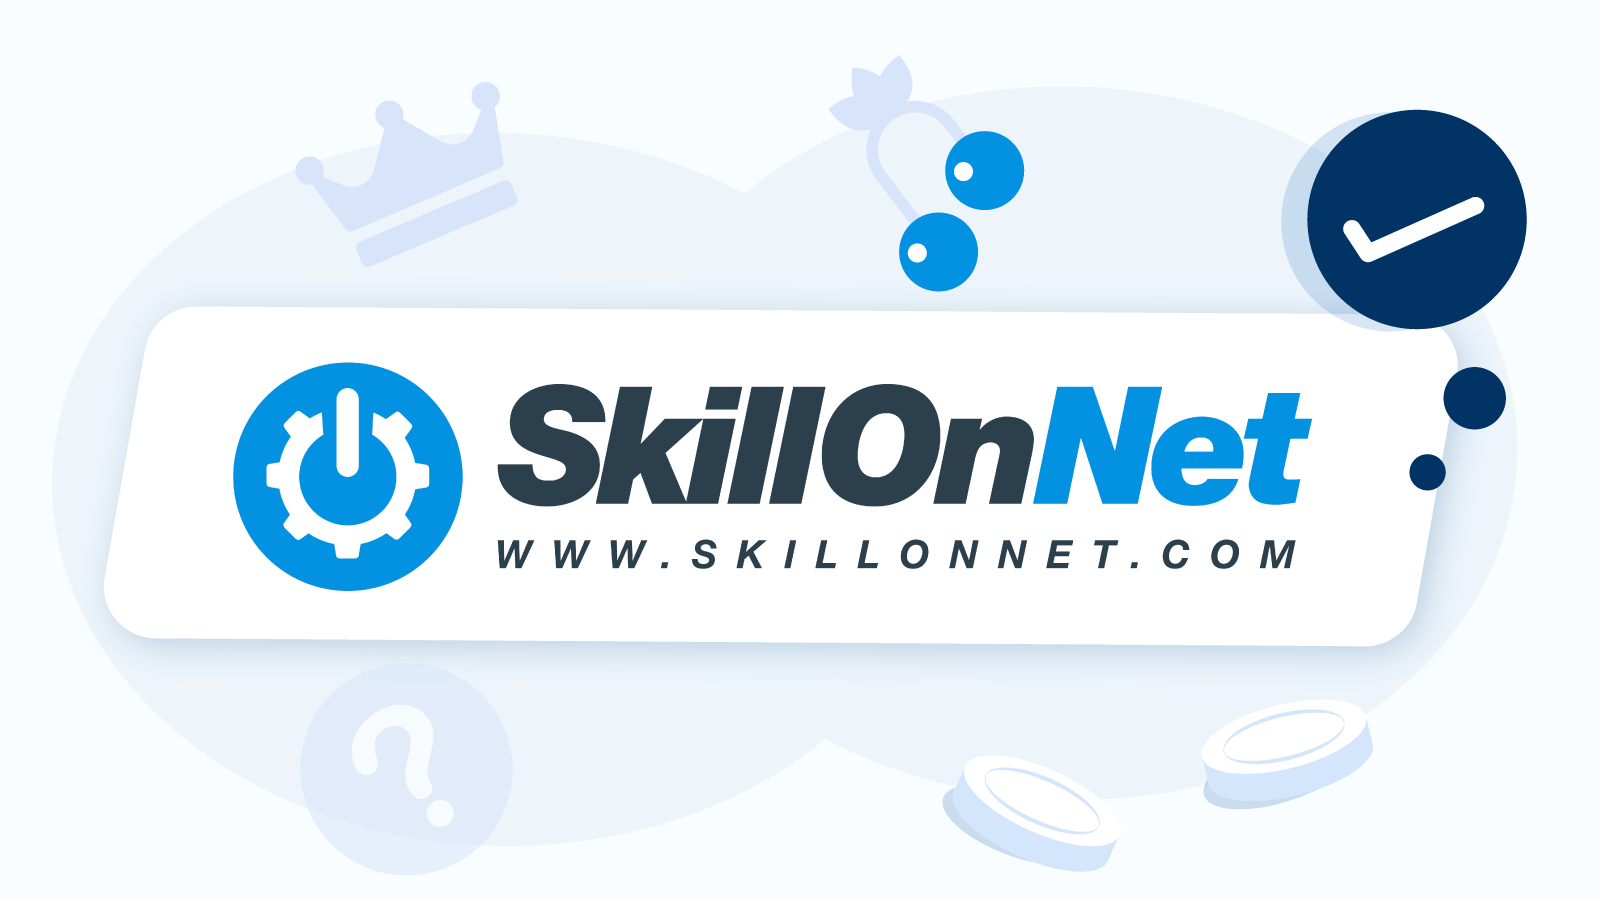 Who-is-Skill-on-Net-Ltd